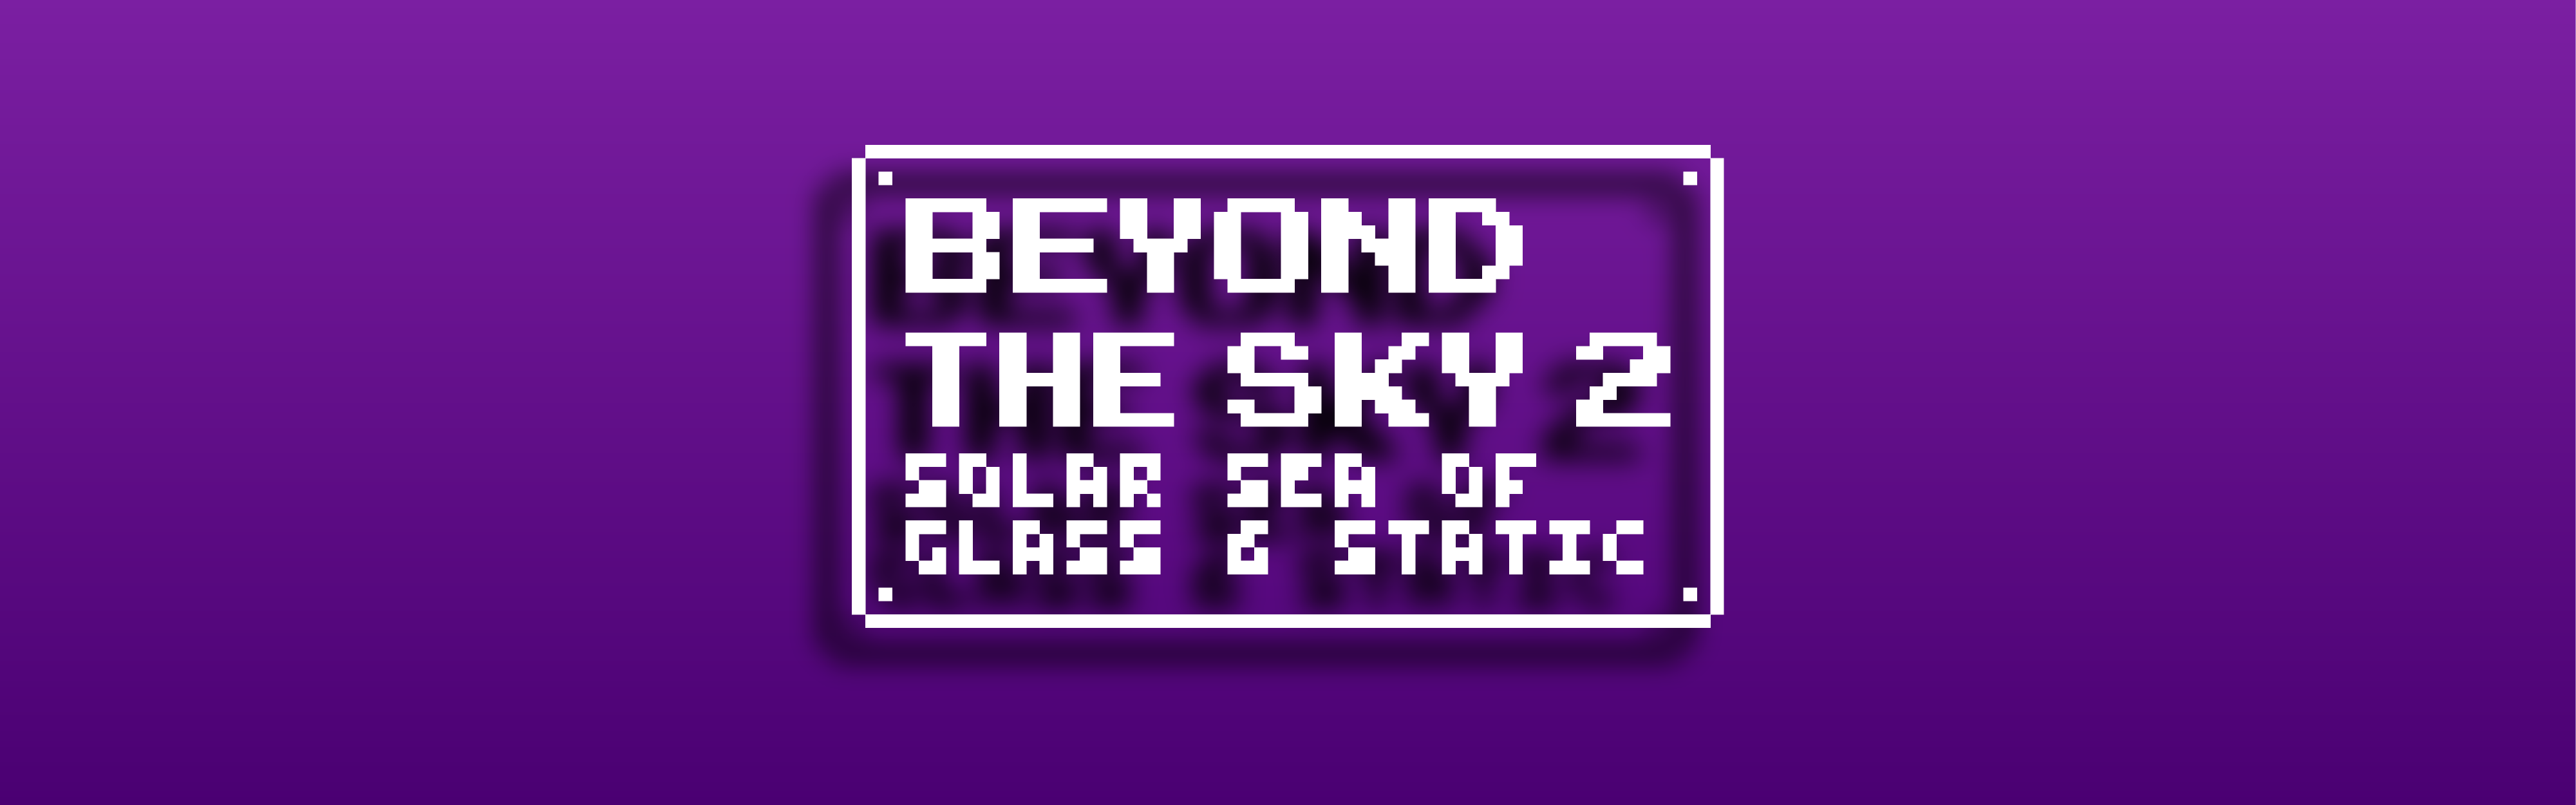 Beyond the Sky 2